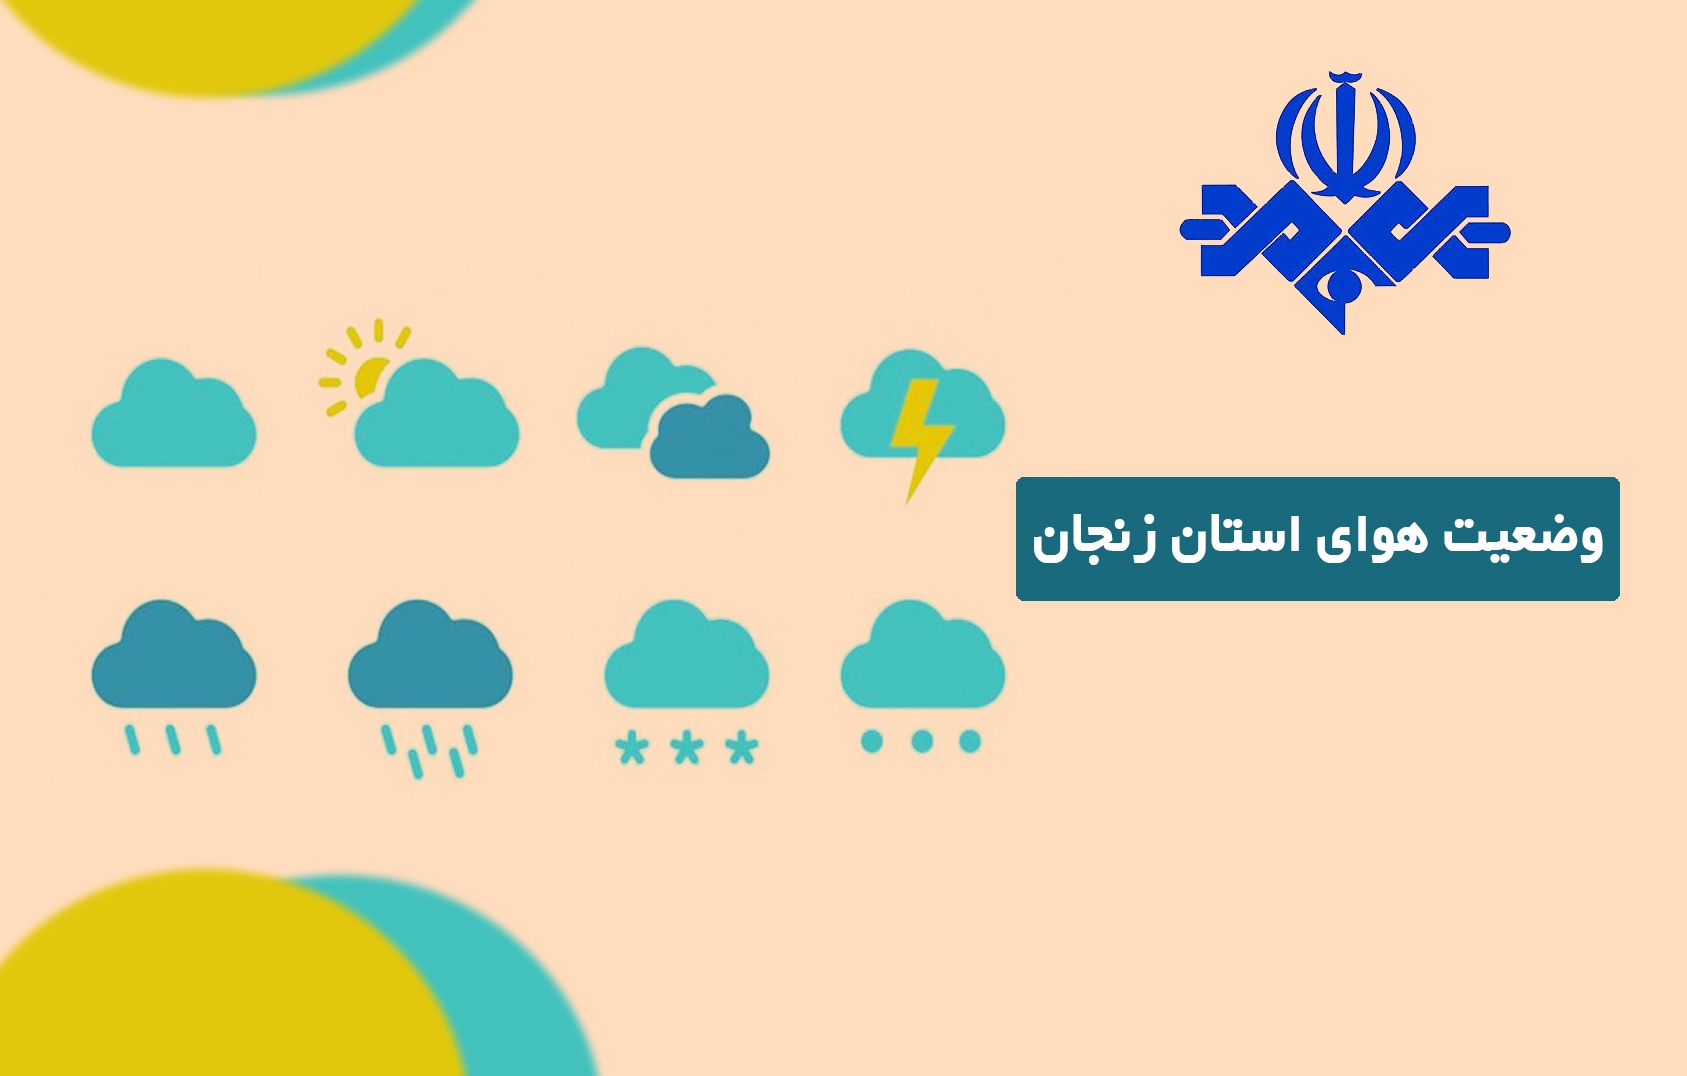 هفته ای بارانی و بادی در پیش روی زنجانی ها